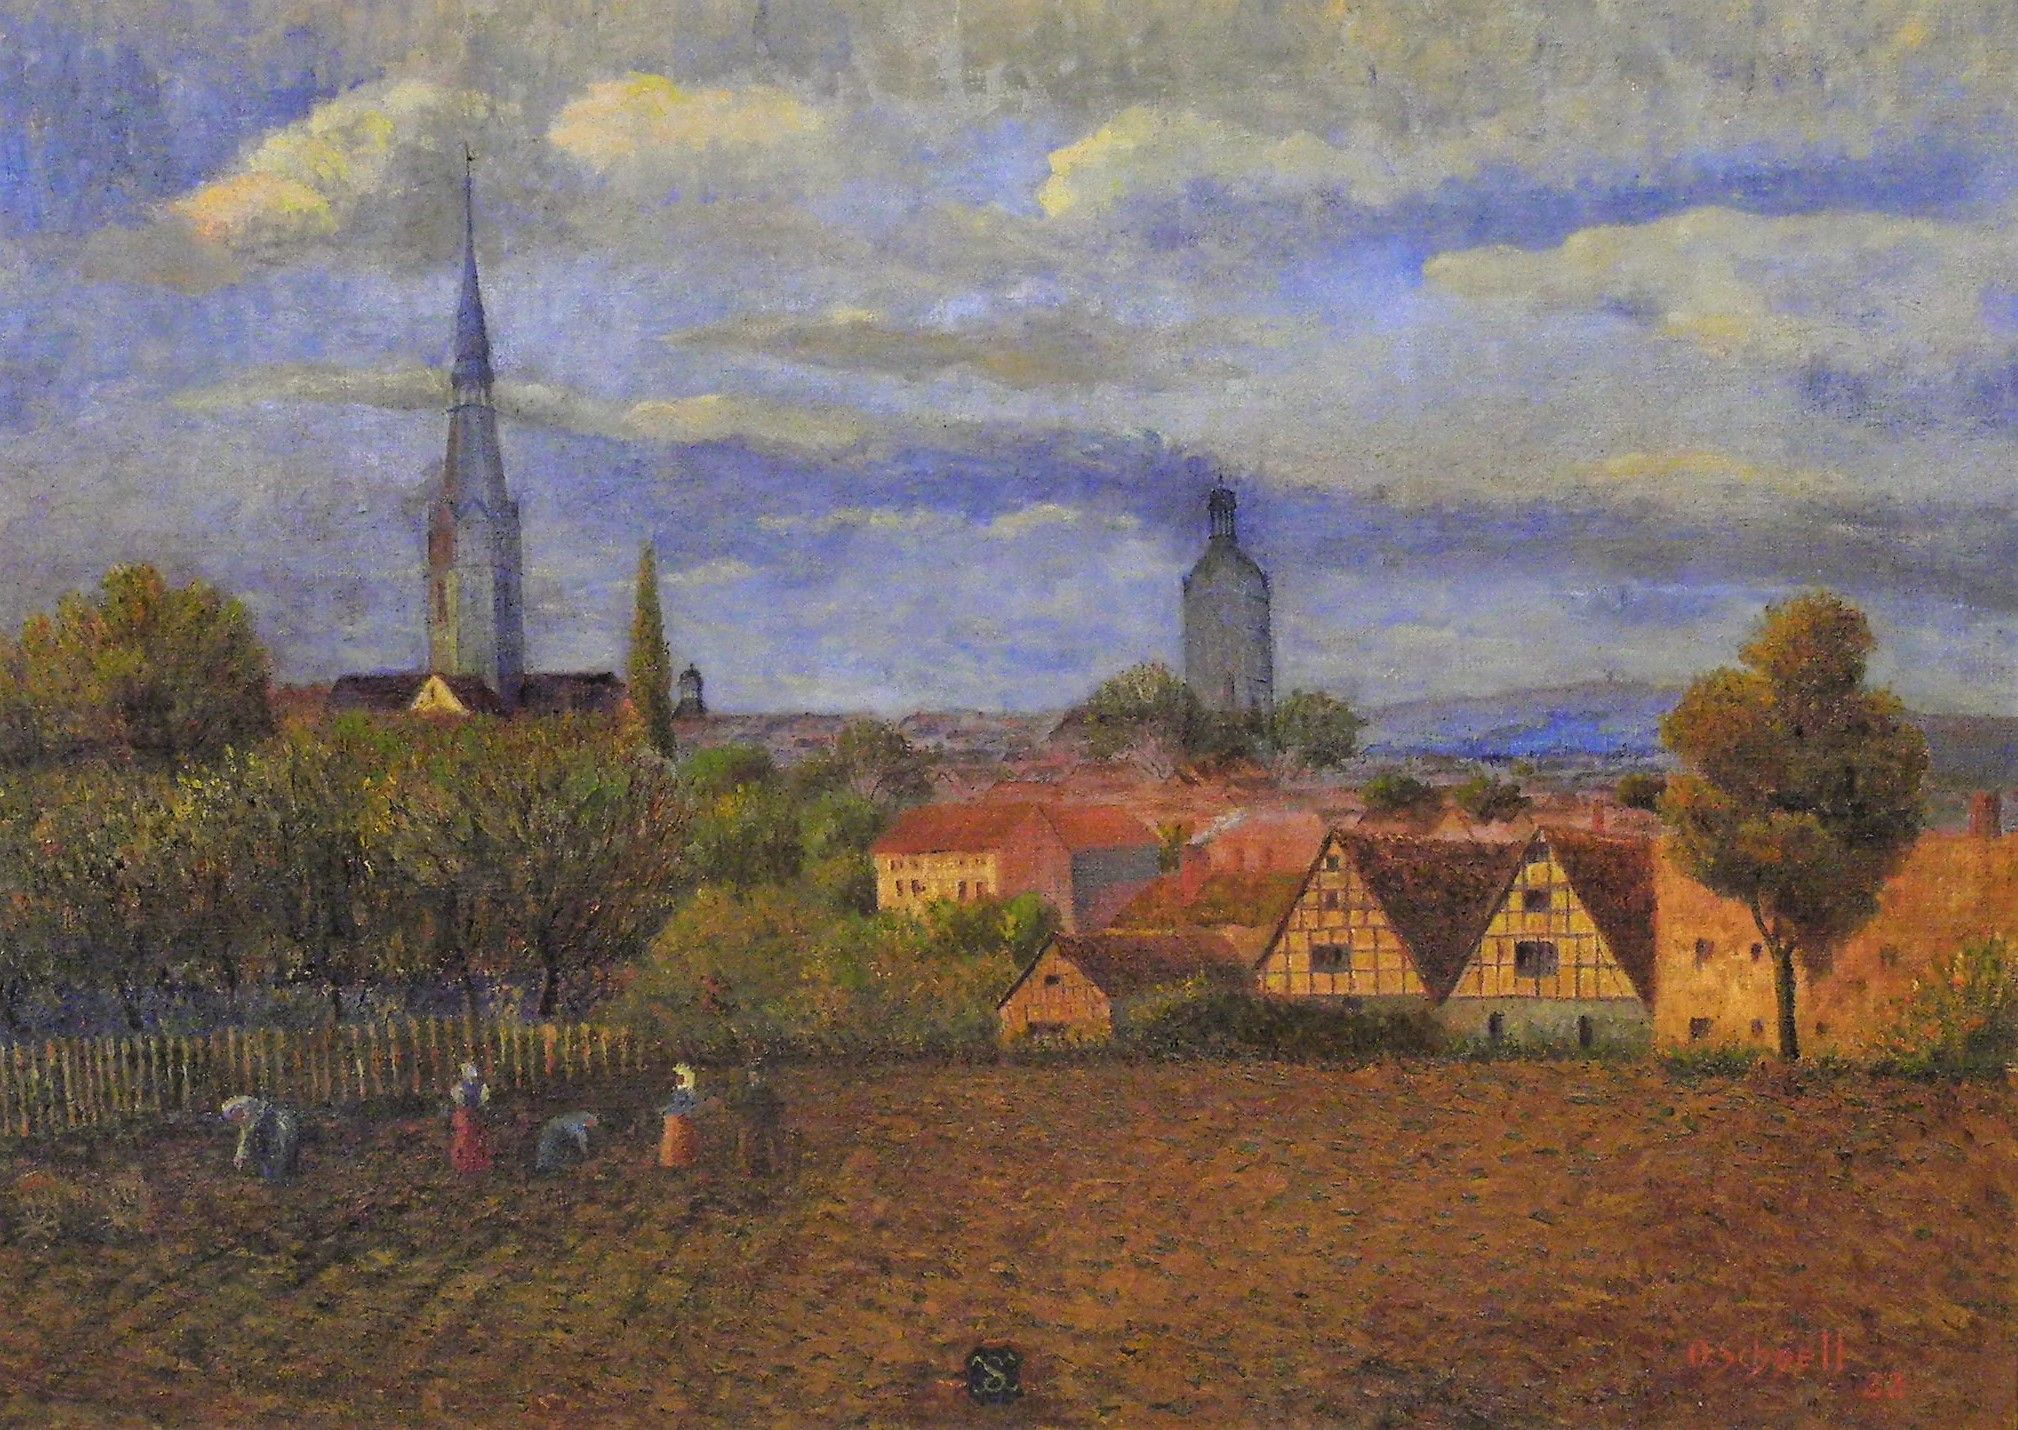 Sangerhausen von Nordosten (Gemälde von O. Schnell) (Erlebniswelt Museen e. V. CC BY-NC-SA)